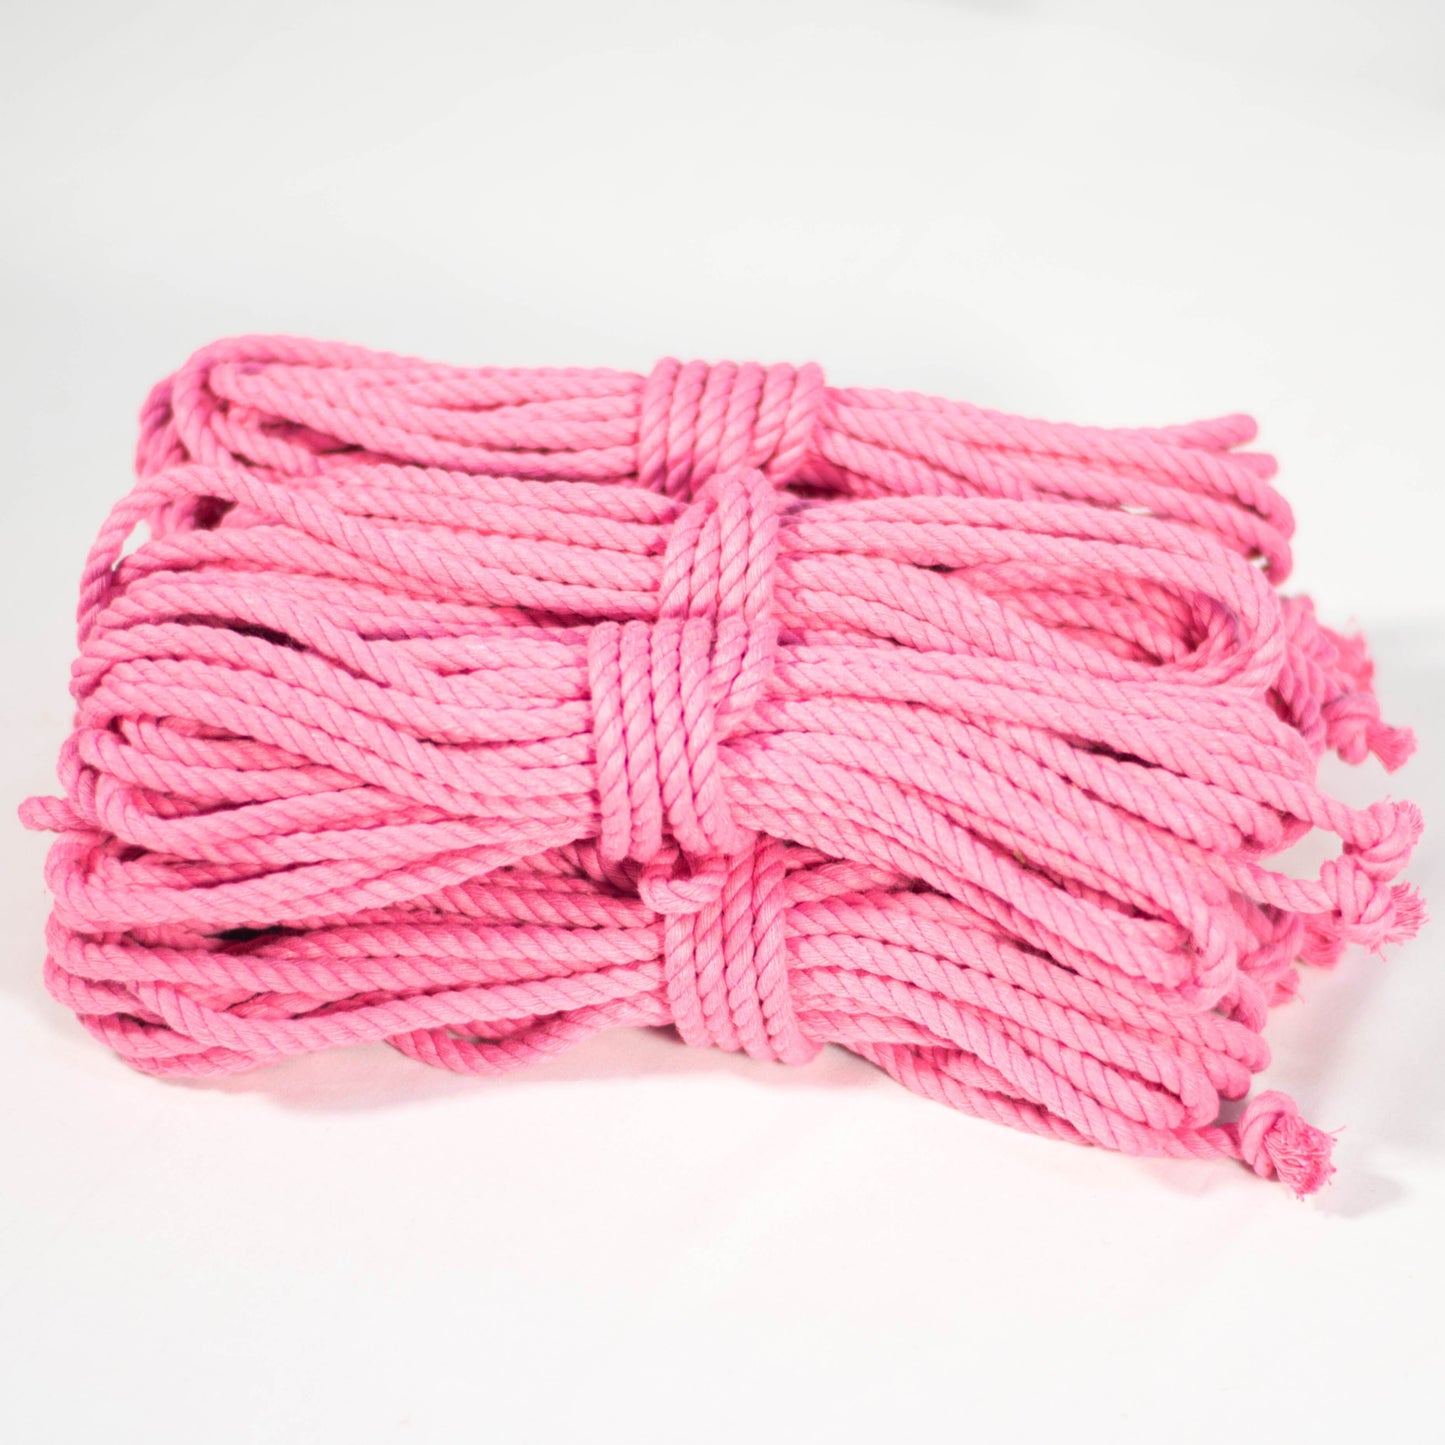 Cotton Play Ropes Shibari Rope Pink Bundle of 6 